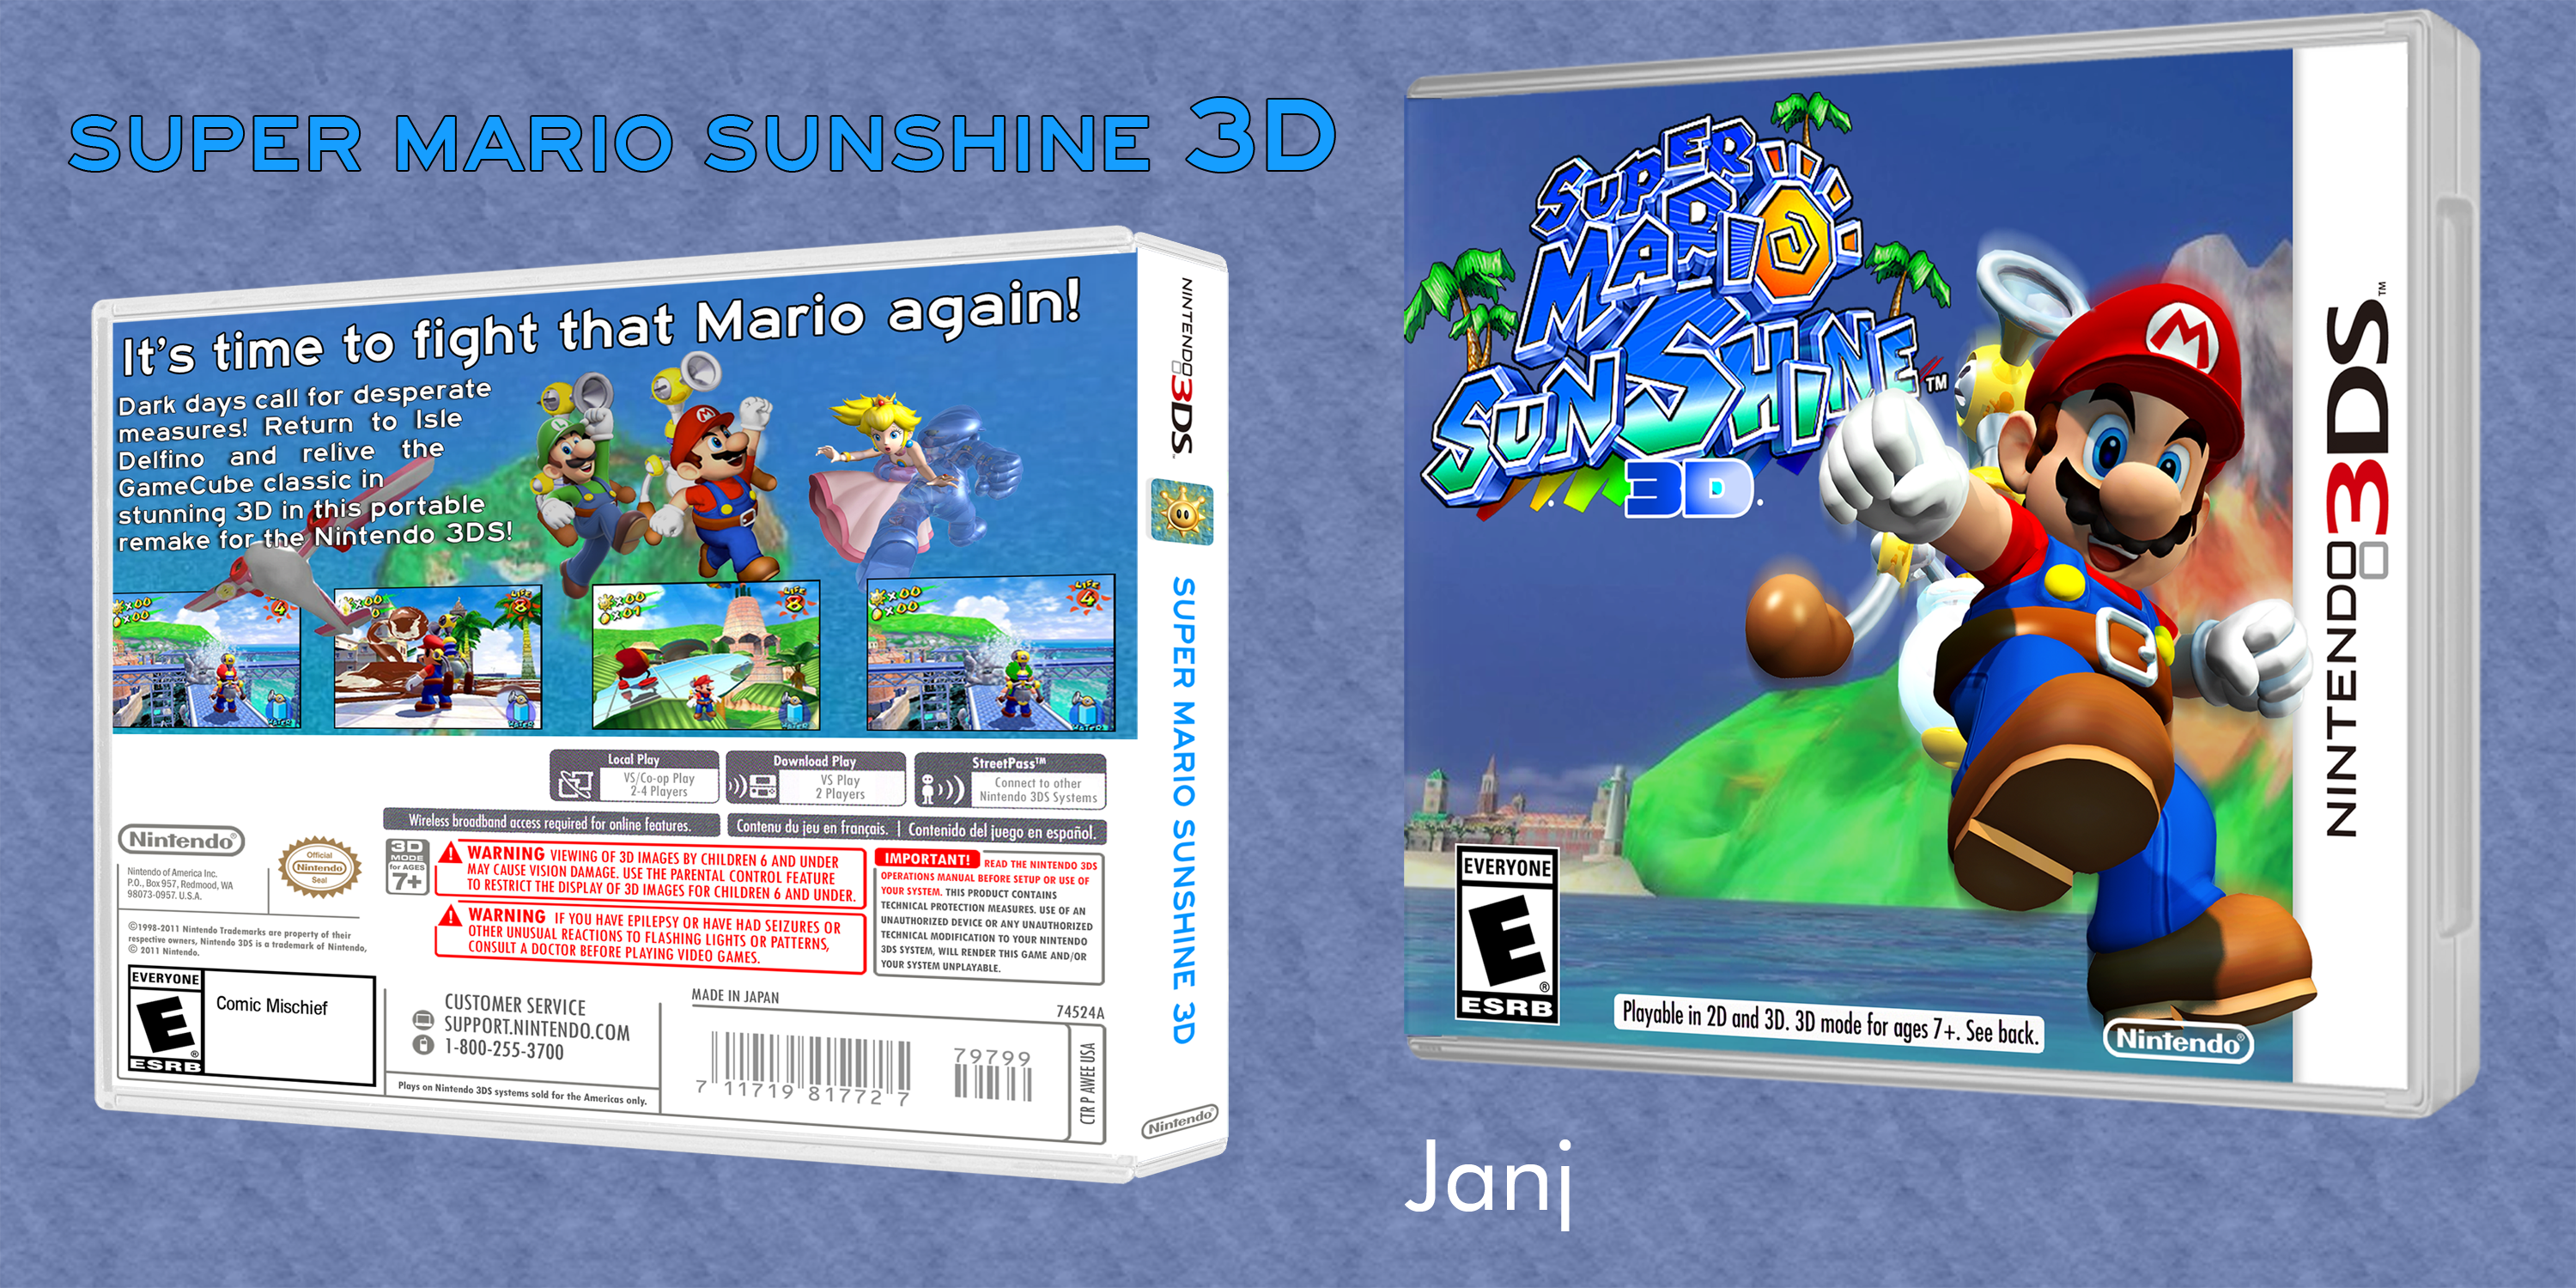 Super Mario Sunshine 3D box cover